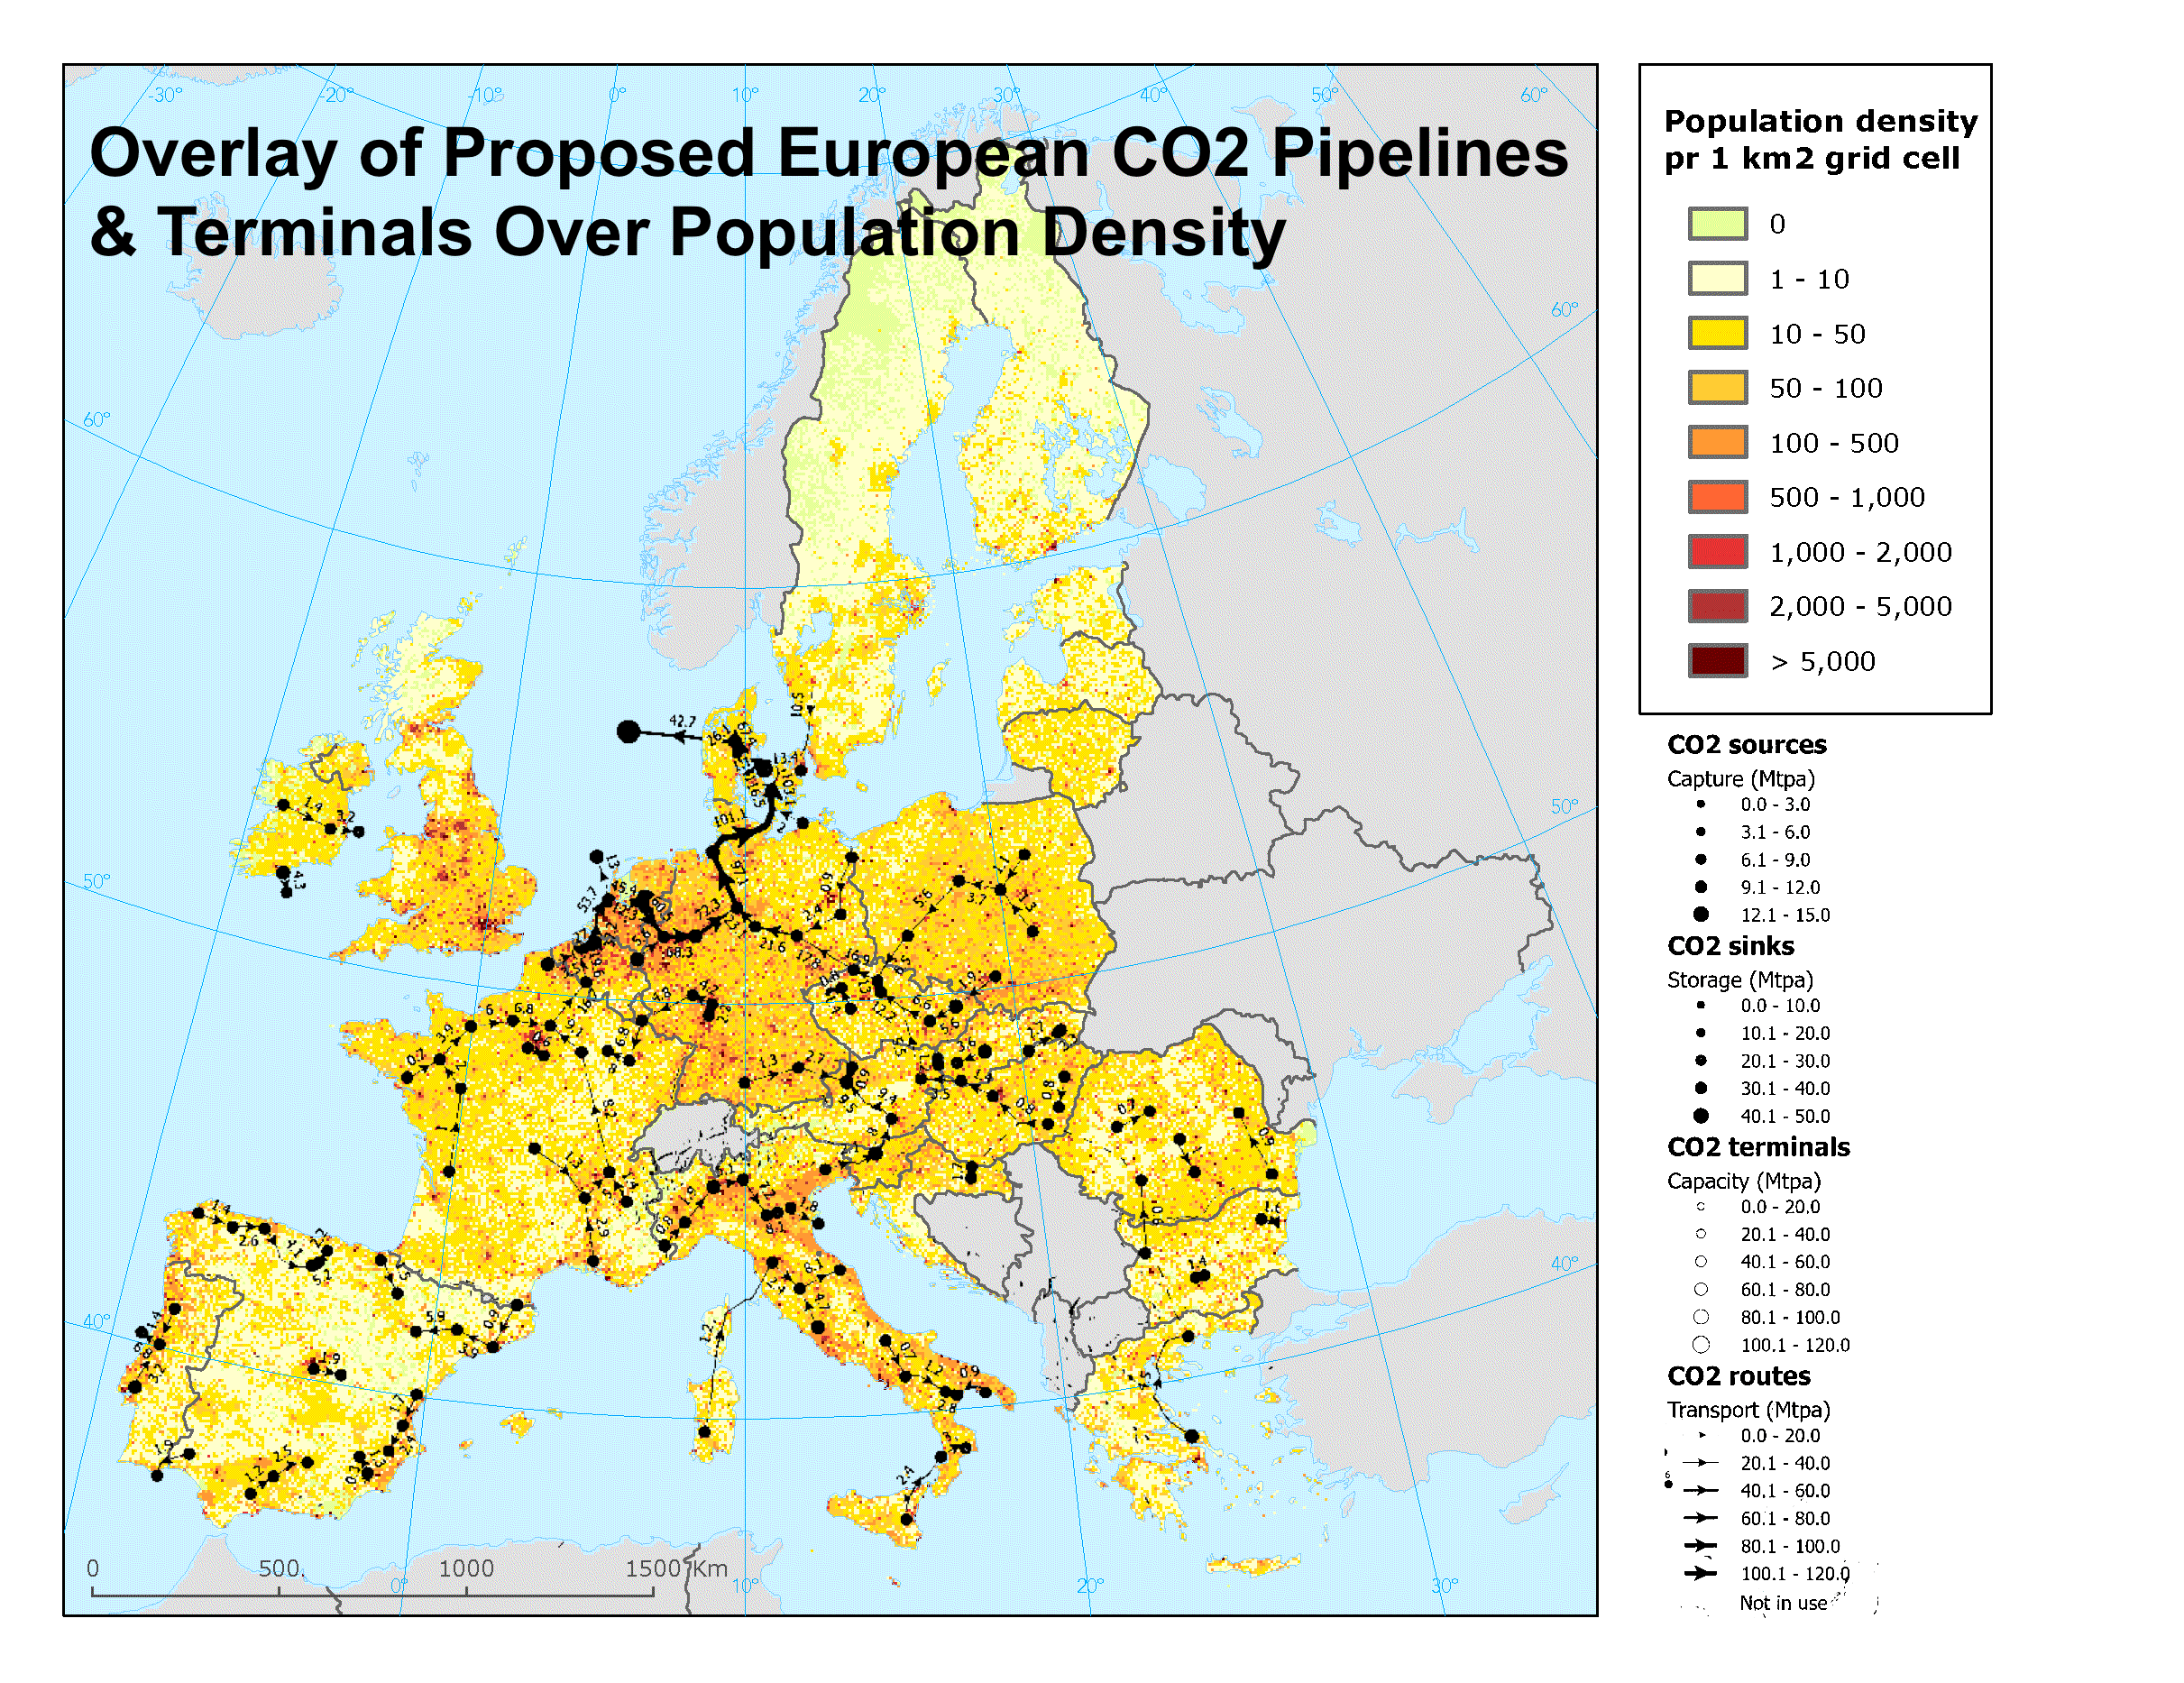 تراكب لخطوط أنابيب ومحطات ثاني أكسيد الكربون الأوروبية المقترحة أعلى خريطة الكثافة السكانية الأوروبية حسب المؤلف